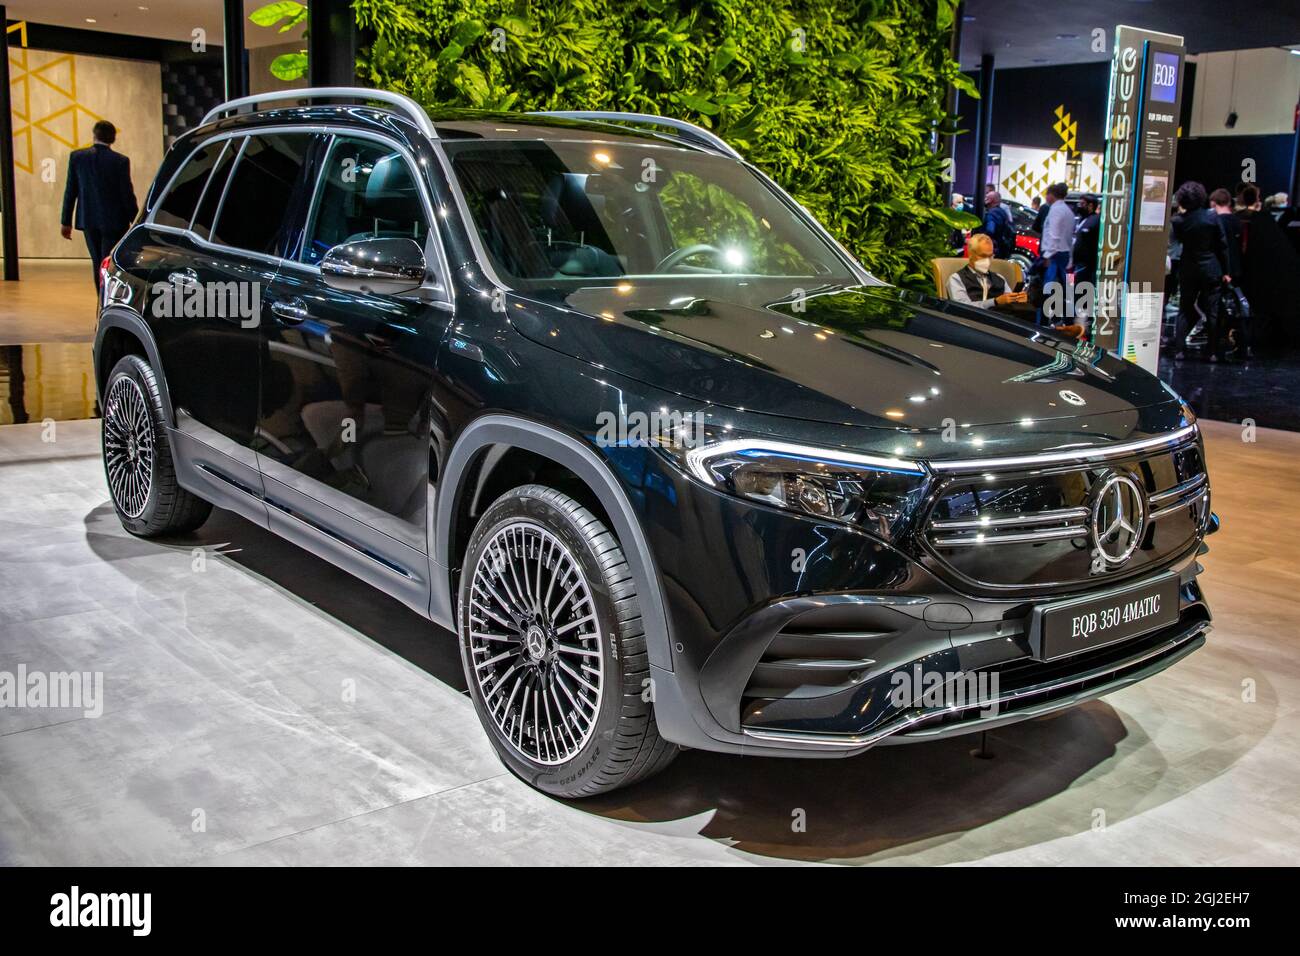 Mercedes-Benz EQA 350 4MATIC auto elettrica SUV presentata al salone IAA Mobility 2021 a Monaco di Baviera, Germania - 6 settembre 2021. Foto Stock